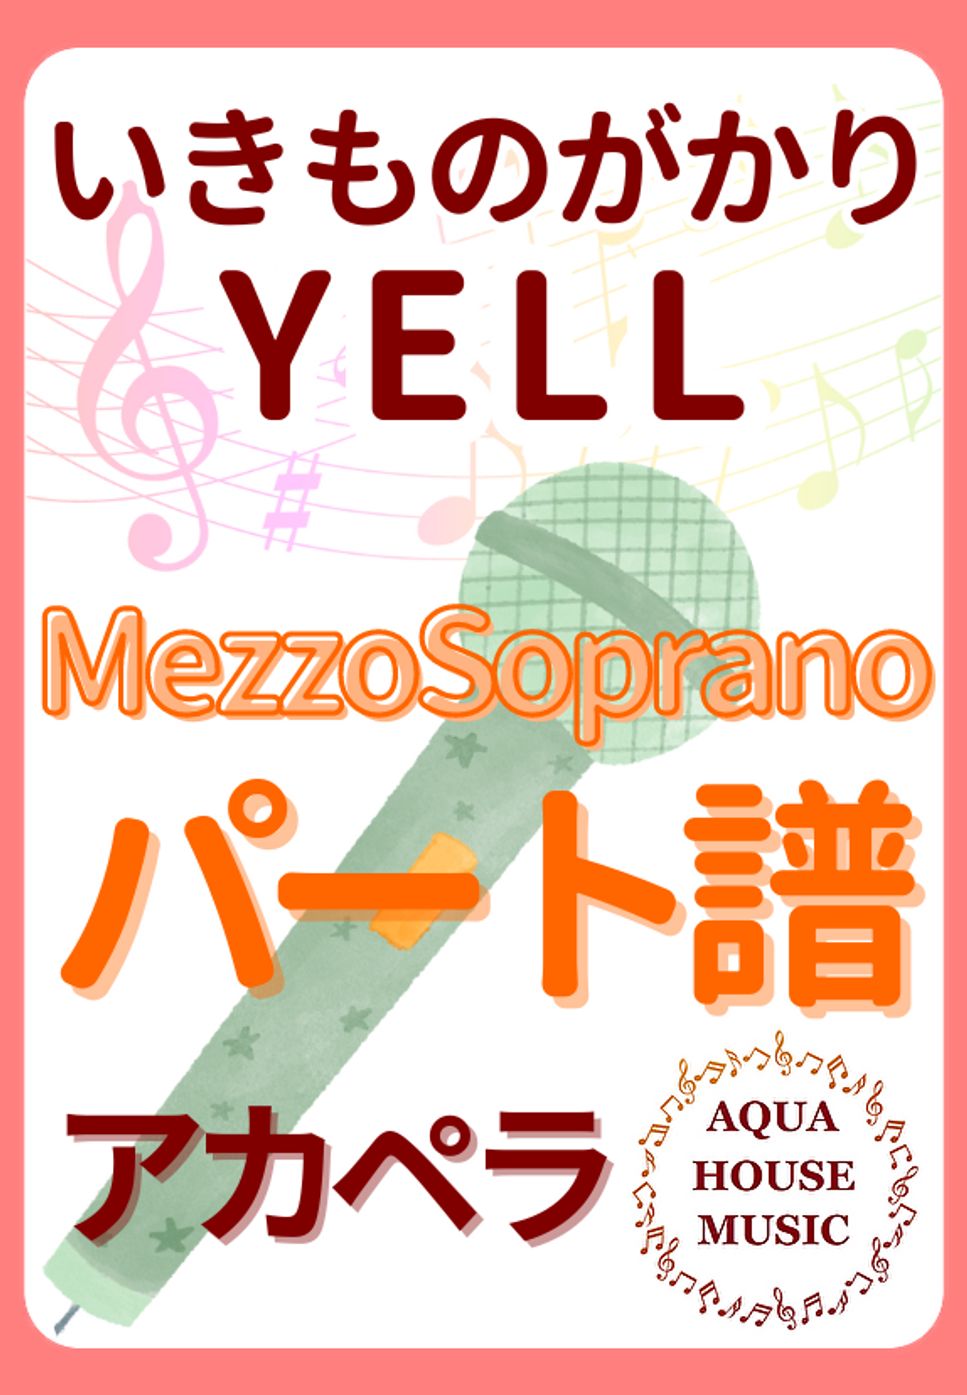 いきものがかり - YELL (アカペラ楽譜♪Mezzo sopranoパート譜) by 飯田 亜紗子